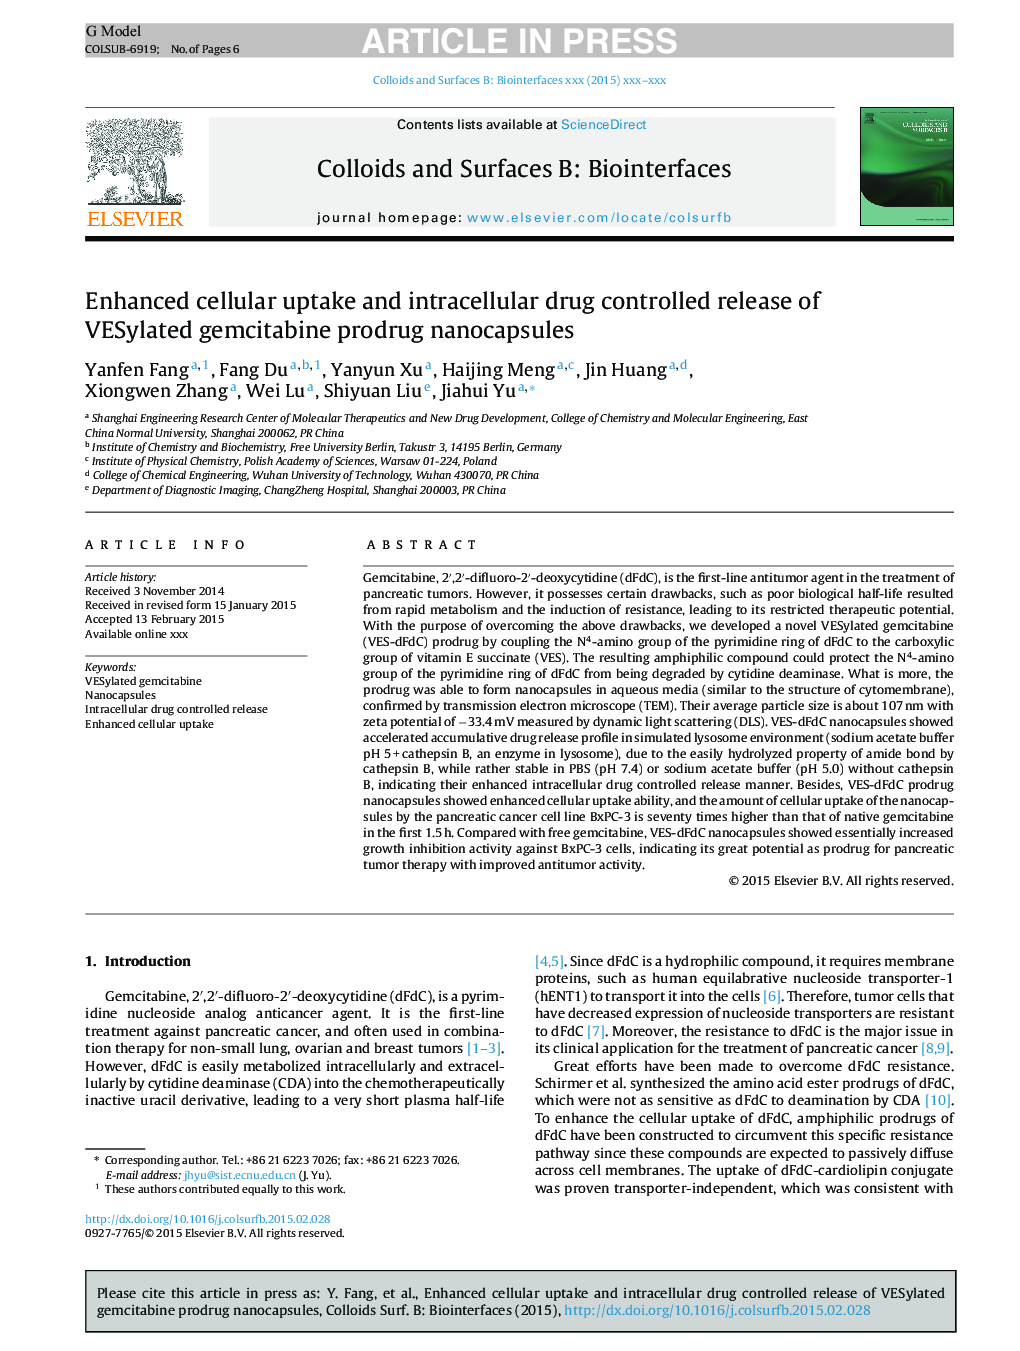 Enhanced cellular uptake and intracellular drug controlled release of VESylated gemcitabine prodrug nanocapsules